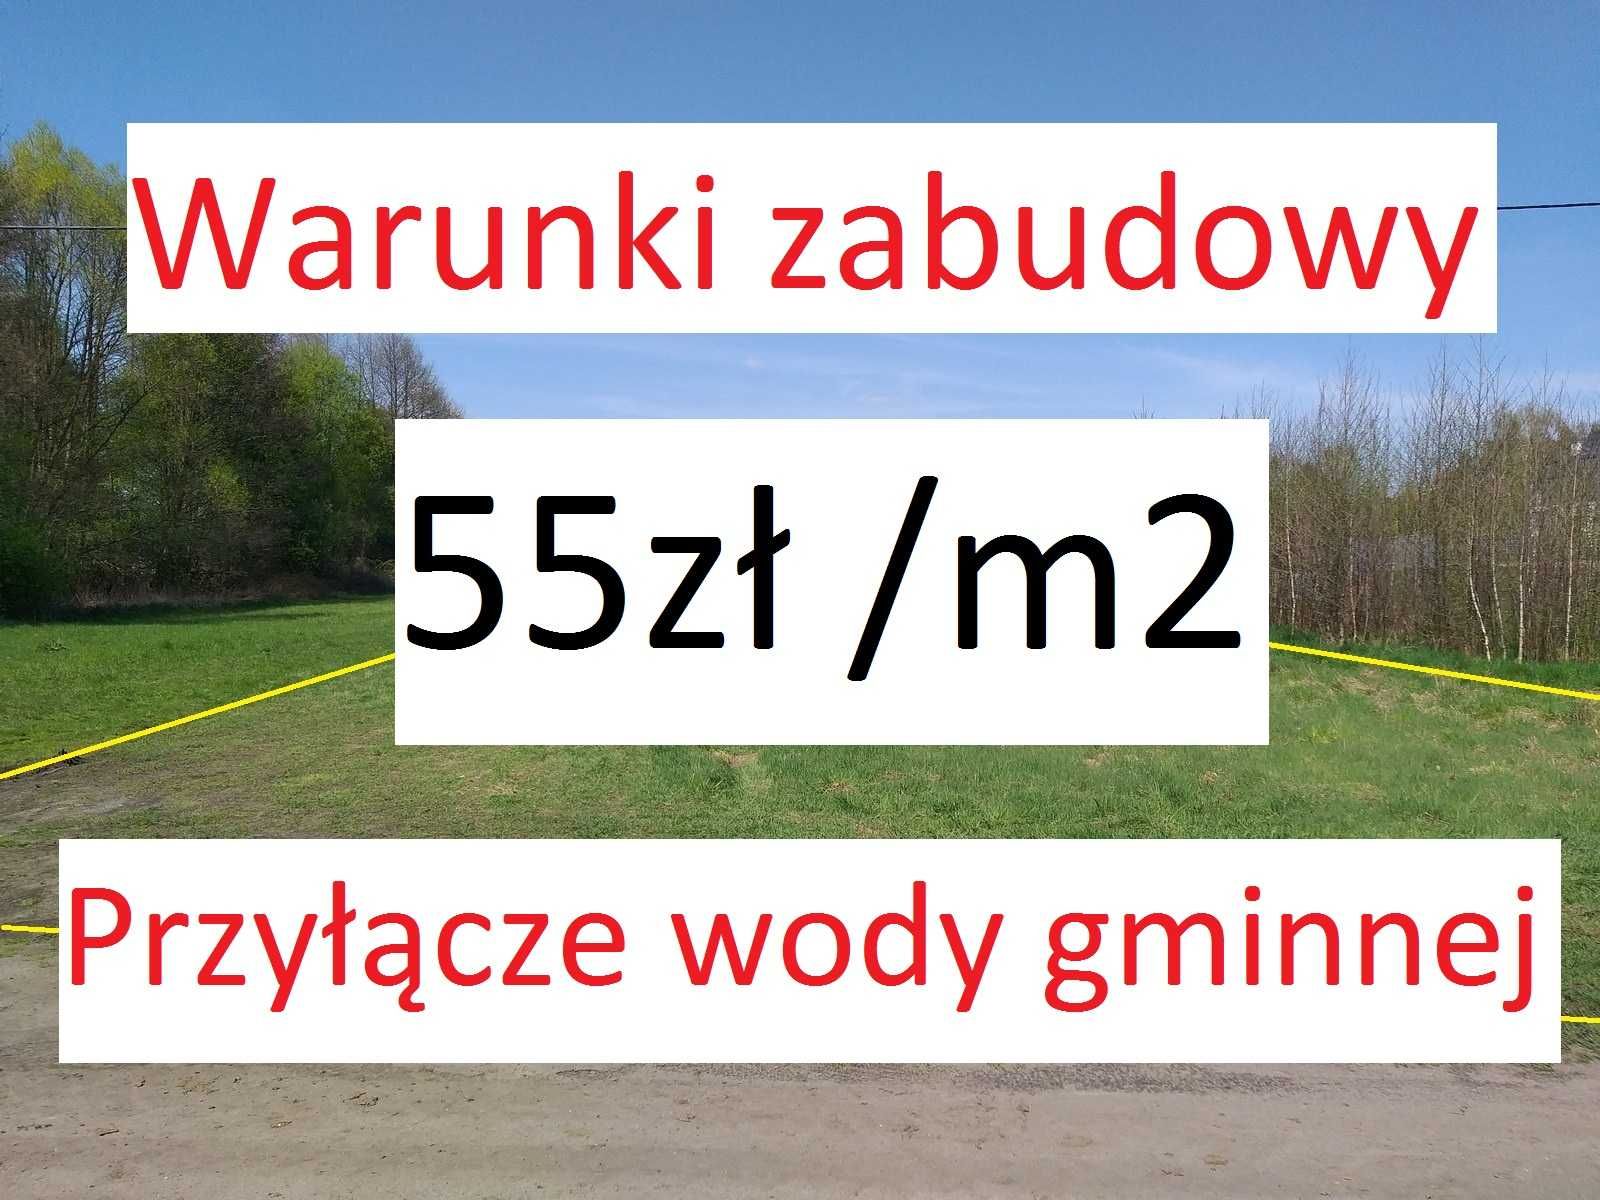 Działka budowlana 55zł /m2 - Borek  | war. zabudowy + przyłącze wody